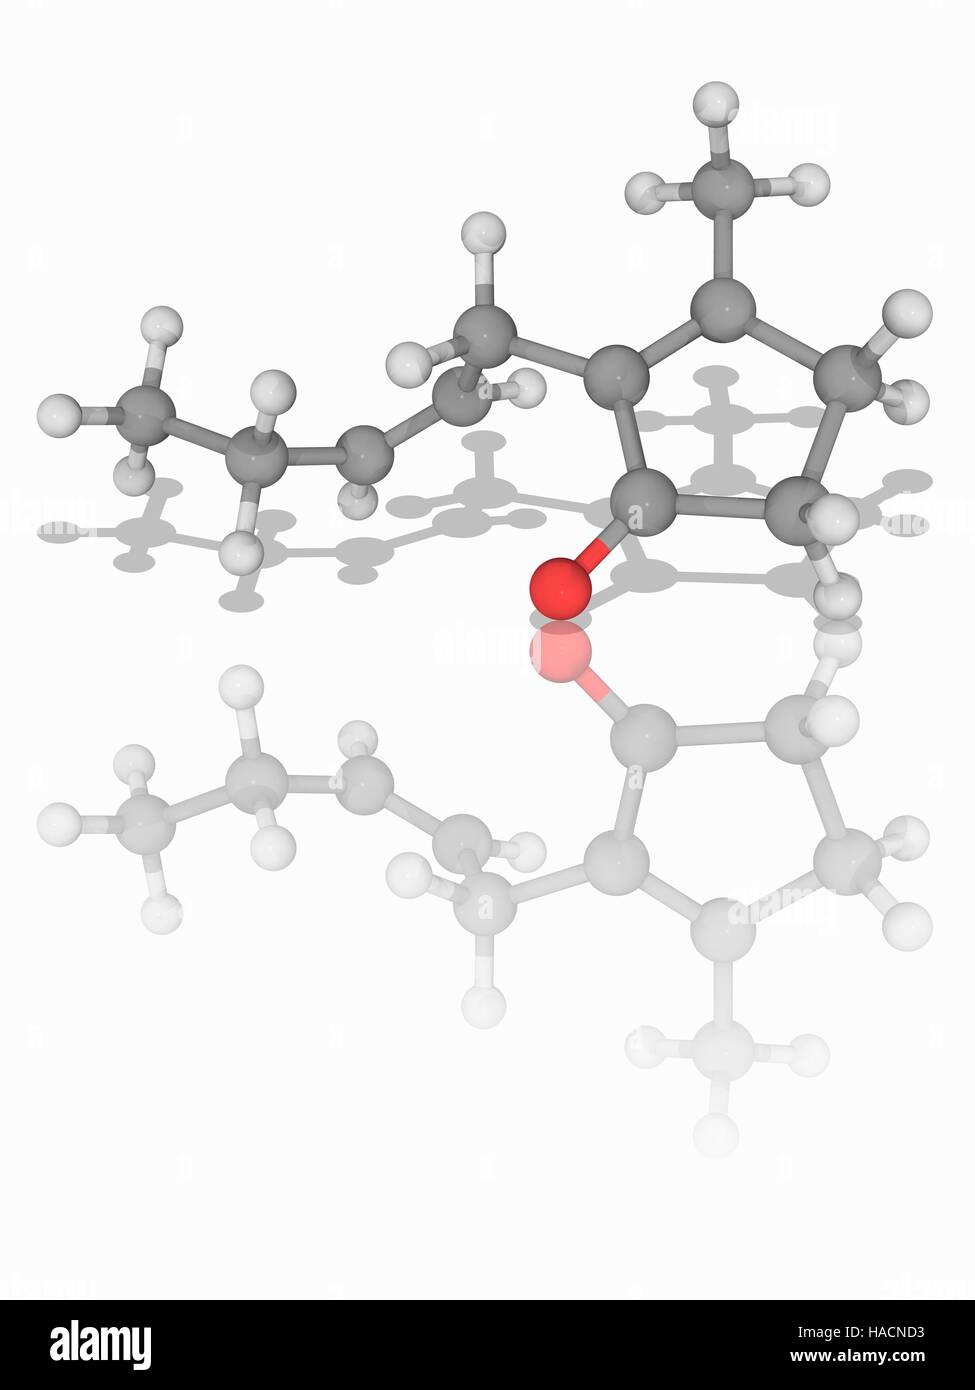 Jasmone. Il modello molecolare del chetone e cicloalchene jasmone (C11.H16.o.). Questo naturale composto organico viene estratto dall'olio da jasmine (Jasminum) fiori. Utilizzato principalmente in profumi e cosmetici. Gli atomi sono rappresentati da sfere e sono codificati a colori: carbonio (grigio), Idrogeno (bianco) e ossigeno (rosso). Illustrazione. Foto Stock